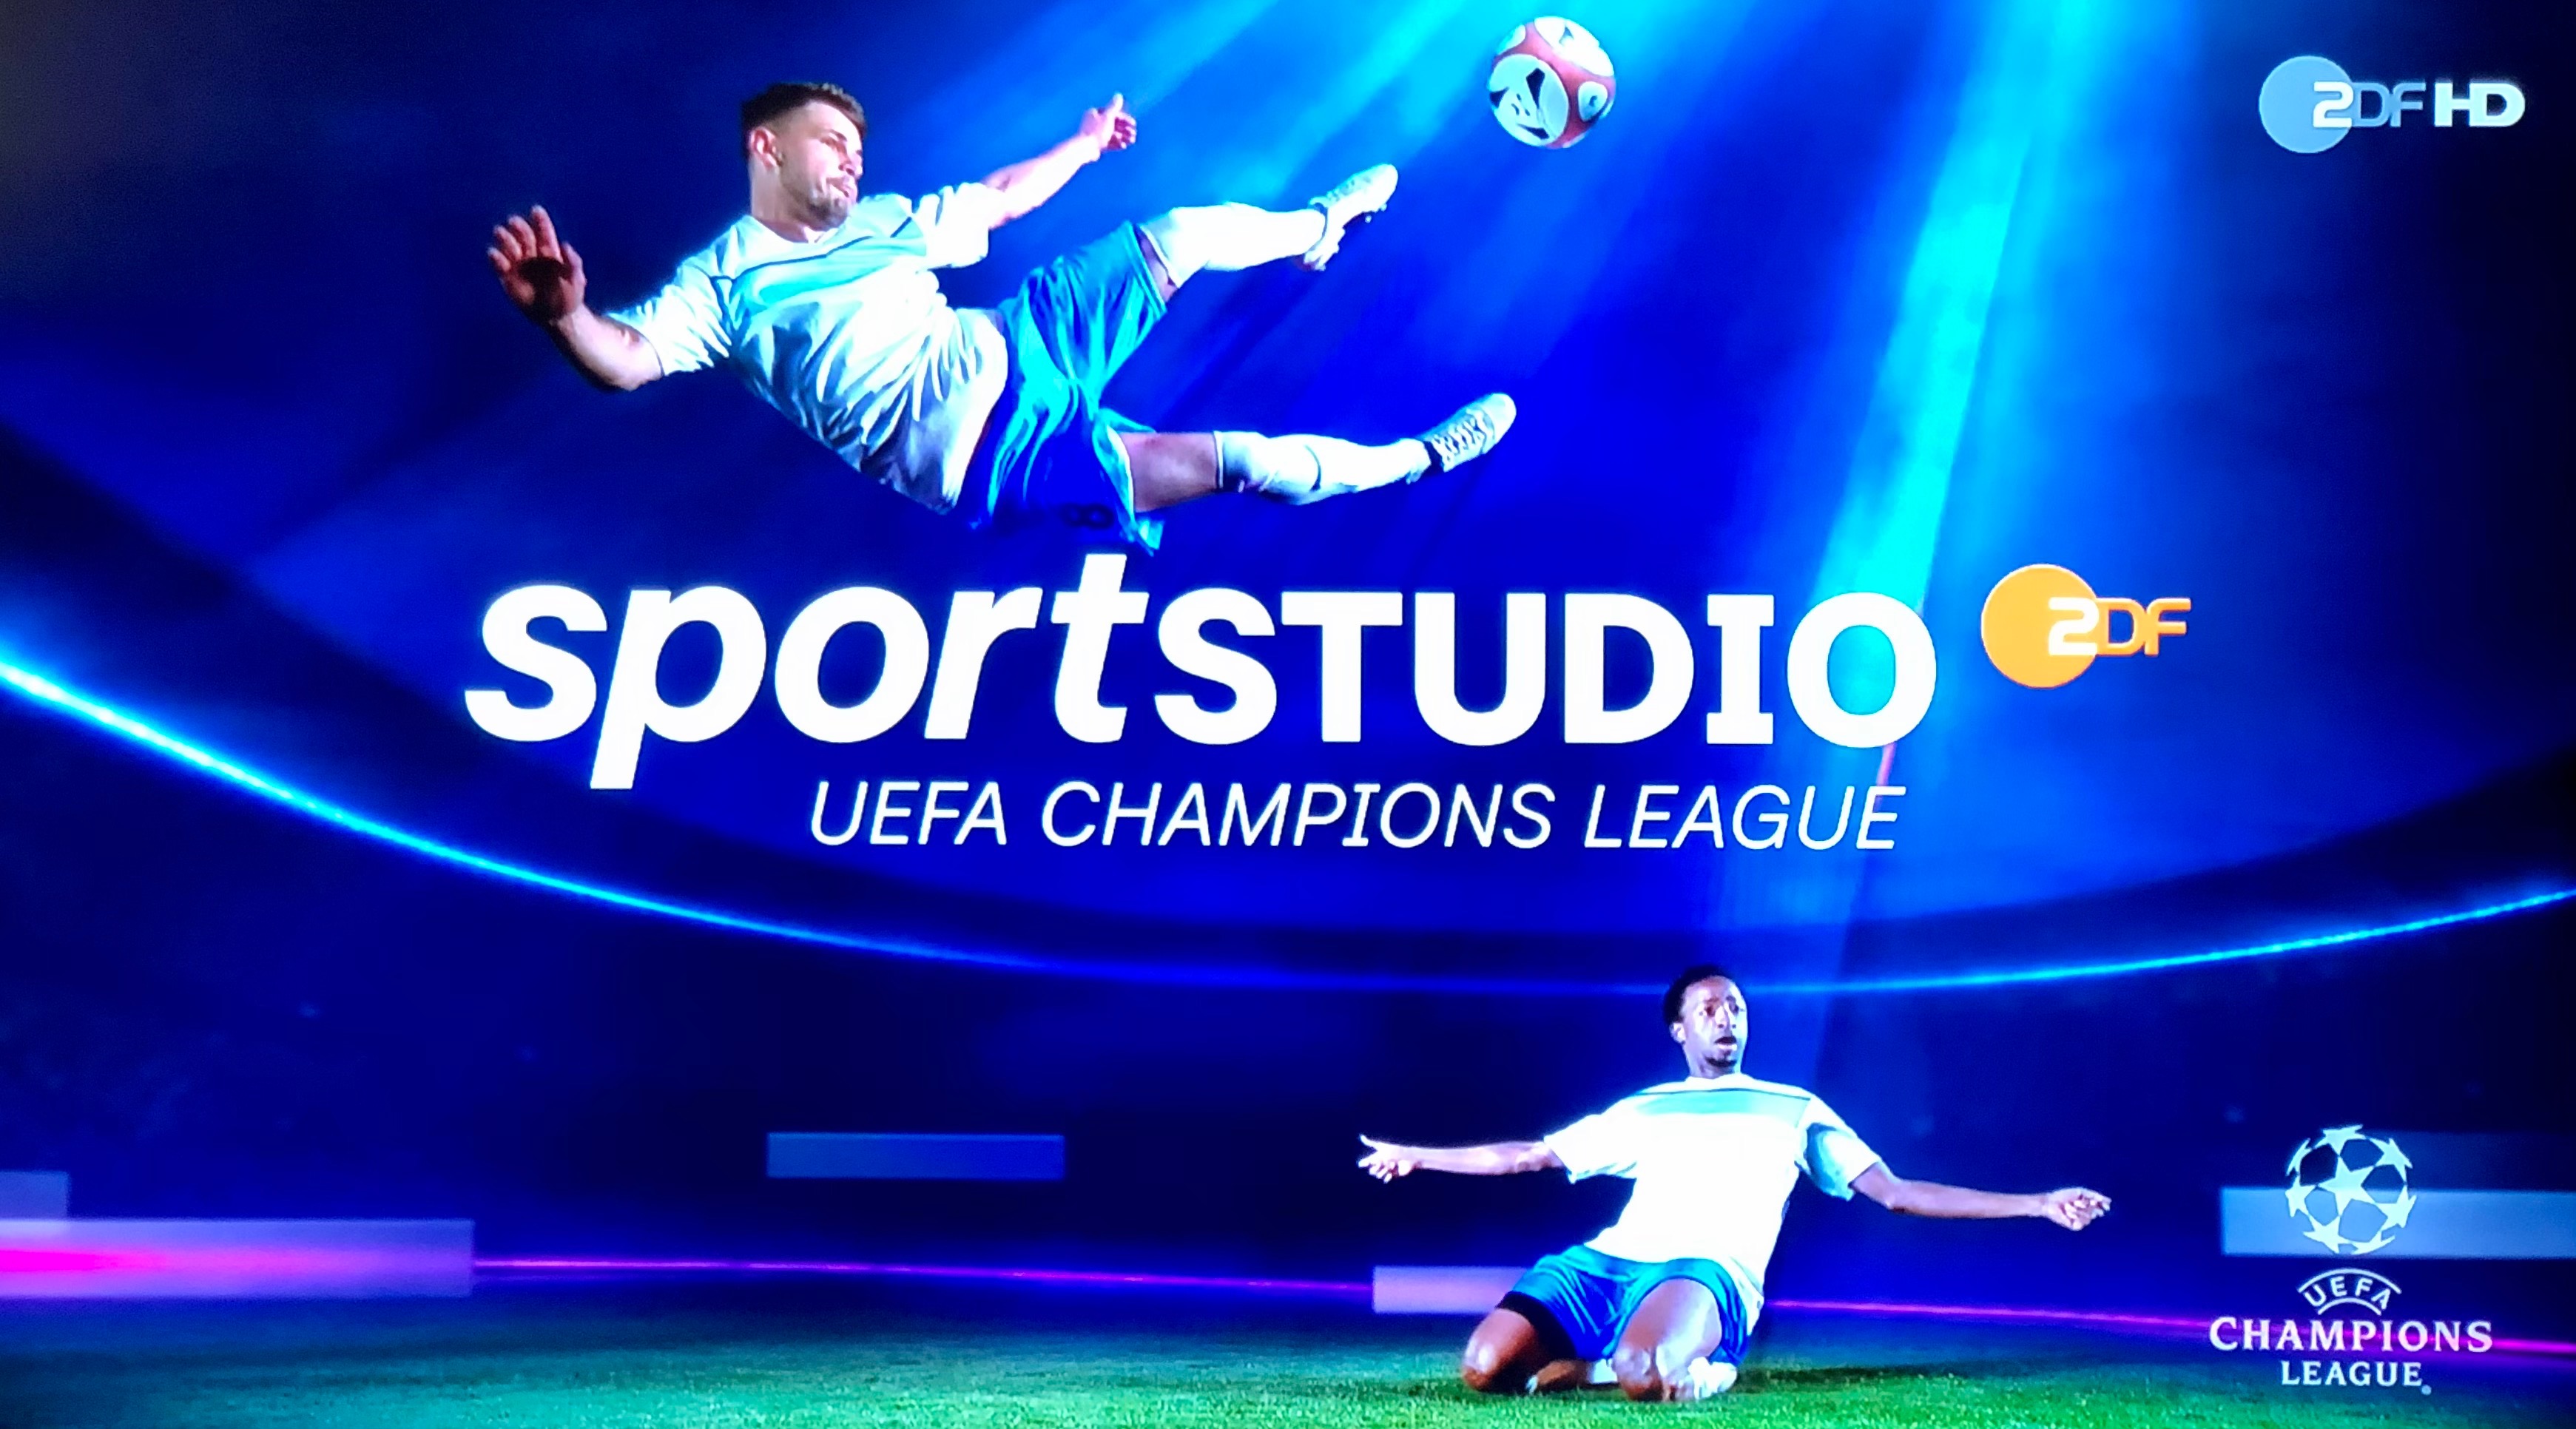 Medienkorrespondenz ZDF berichtet seit dieser Saison wieder über die Fußball-Champions-League